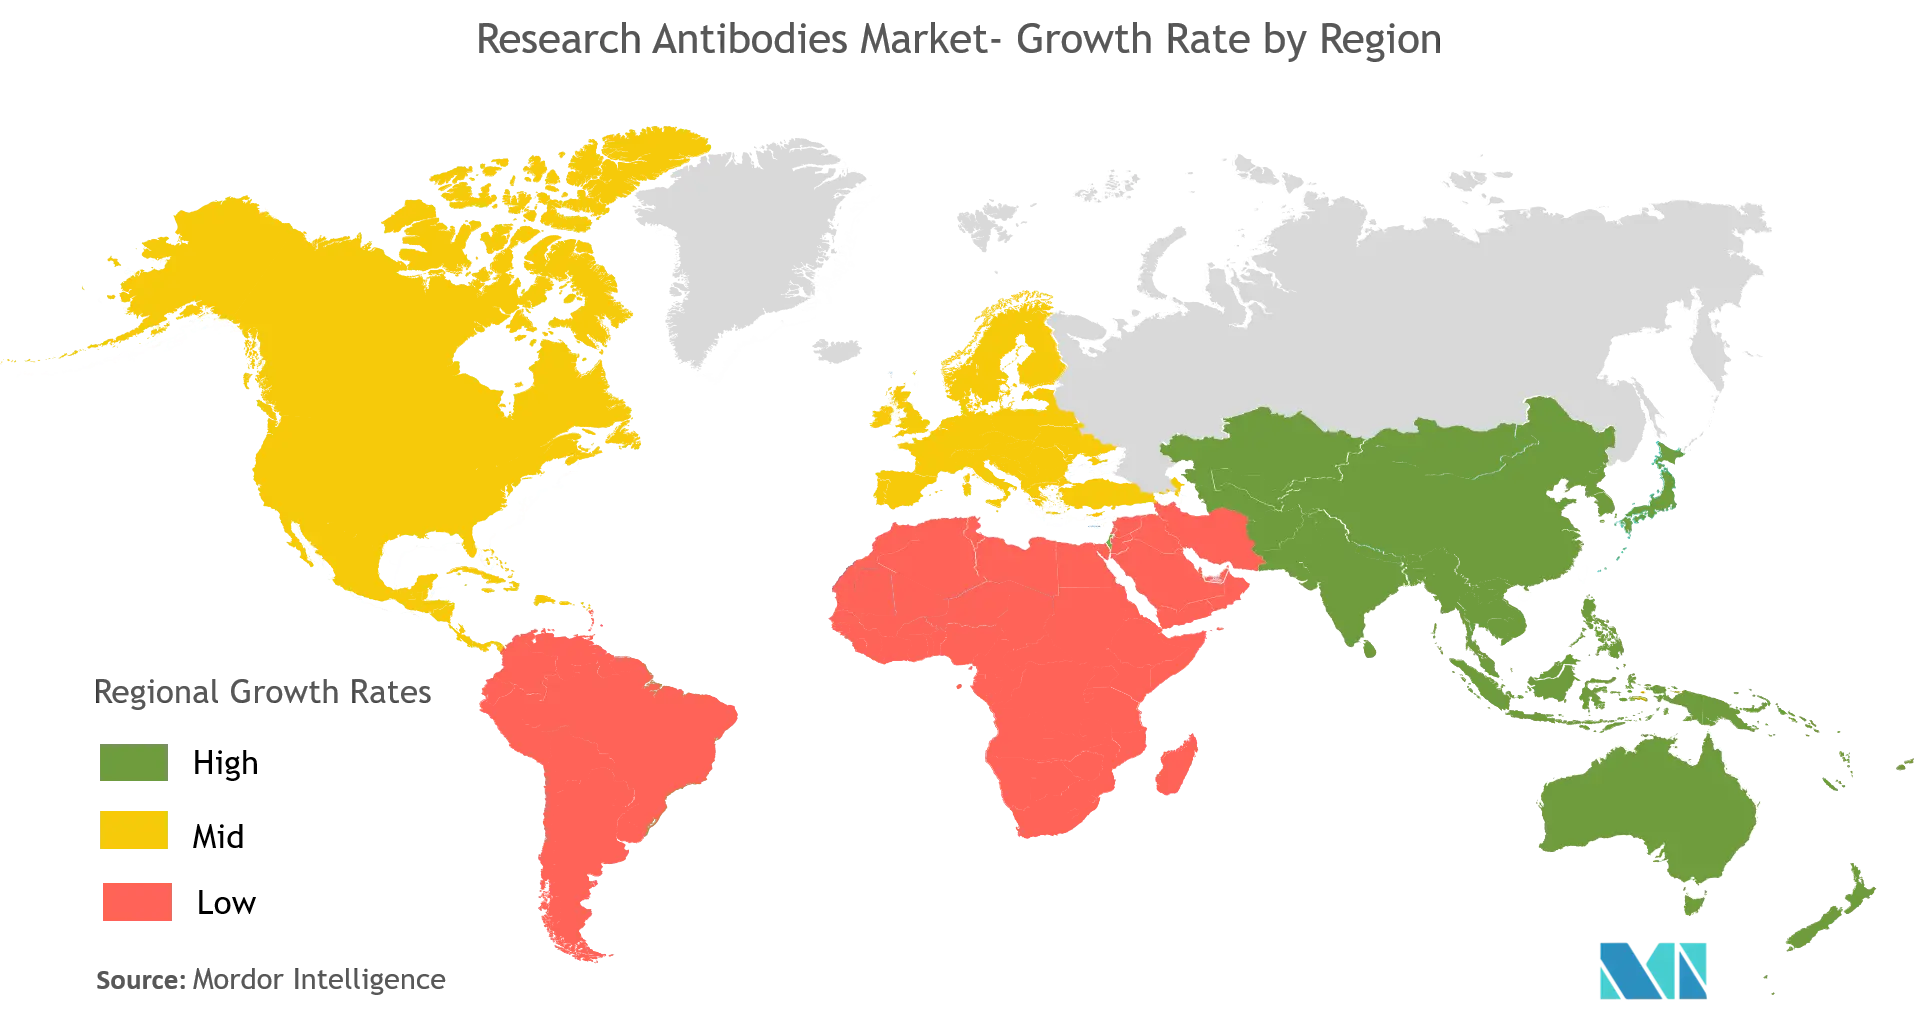 Research Antibodies Market Analysis